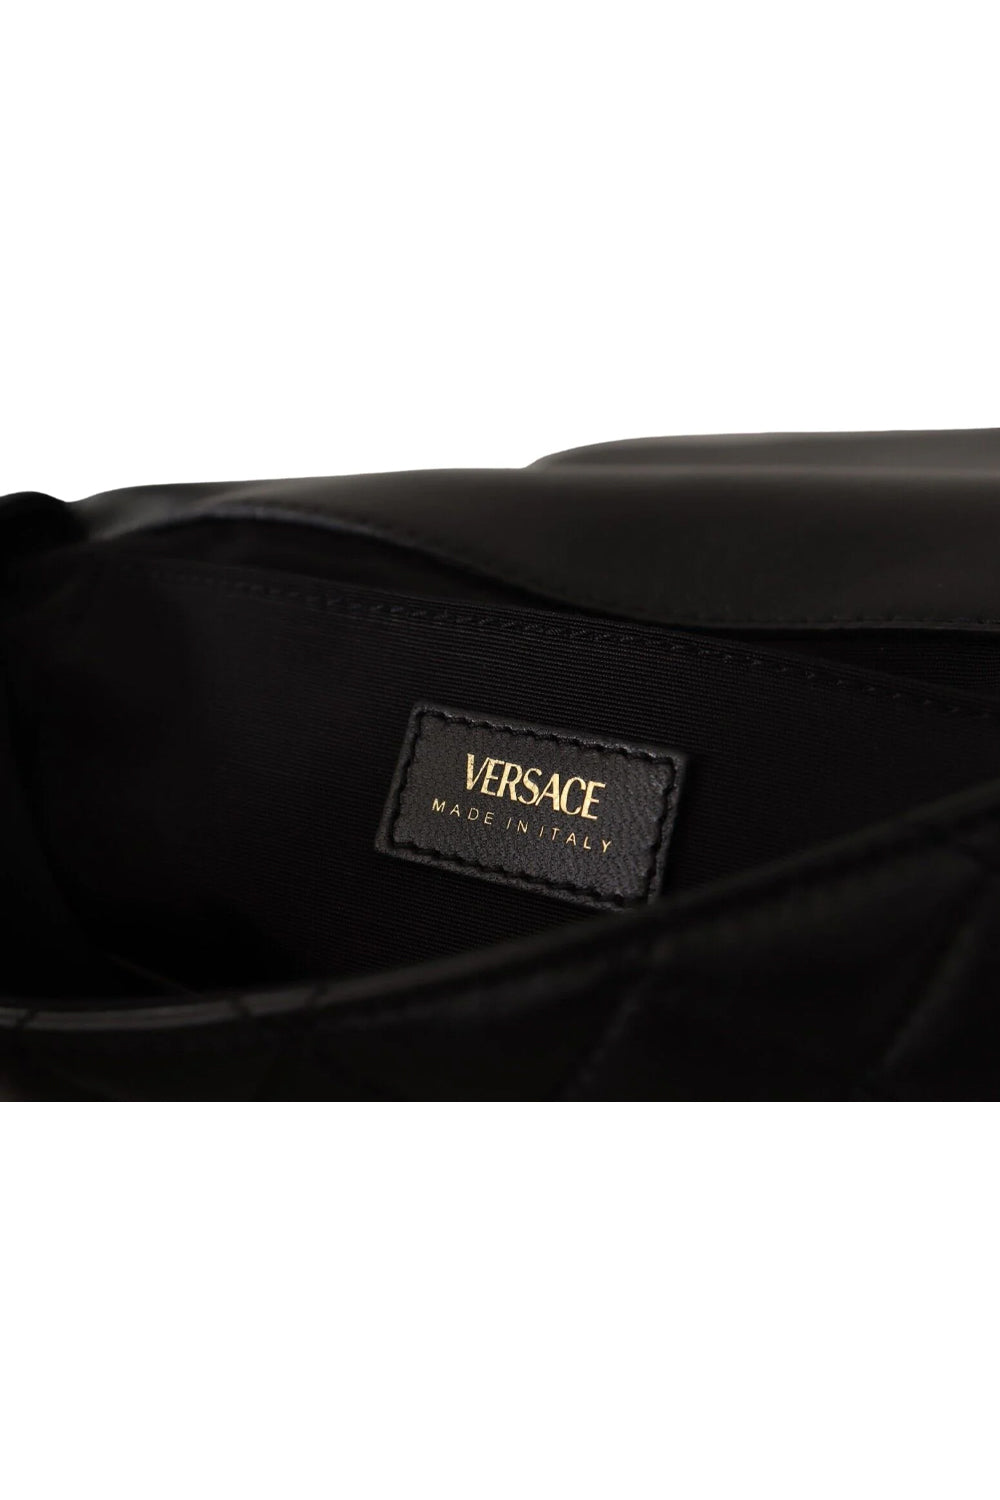 Versace La Medusa Nappa Quilted Black Leather Large Shoulder Bag